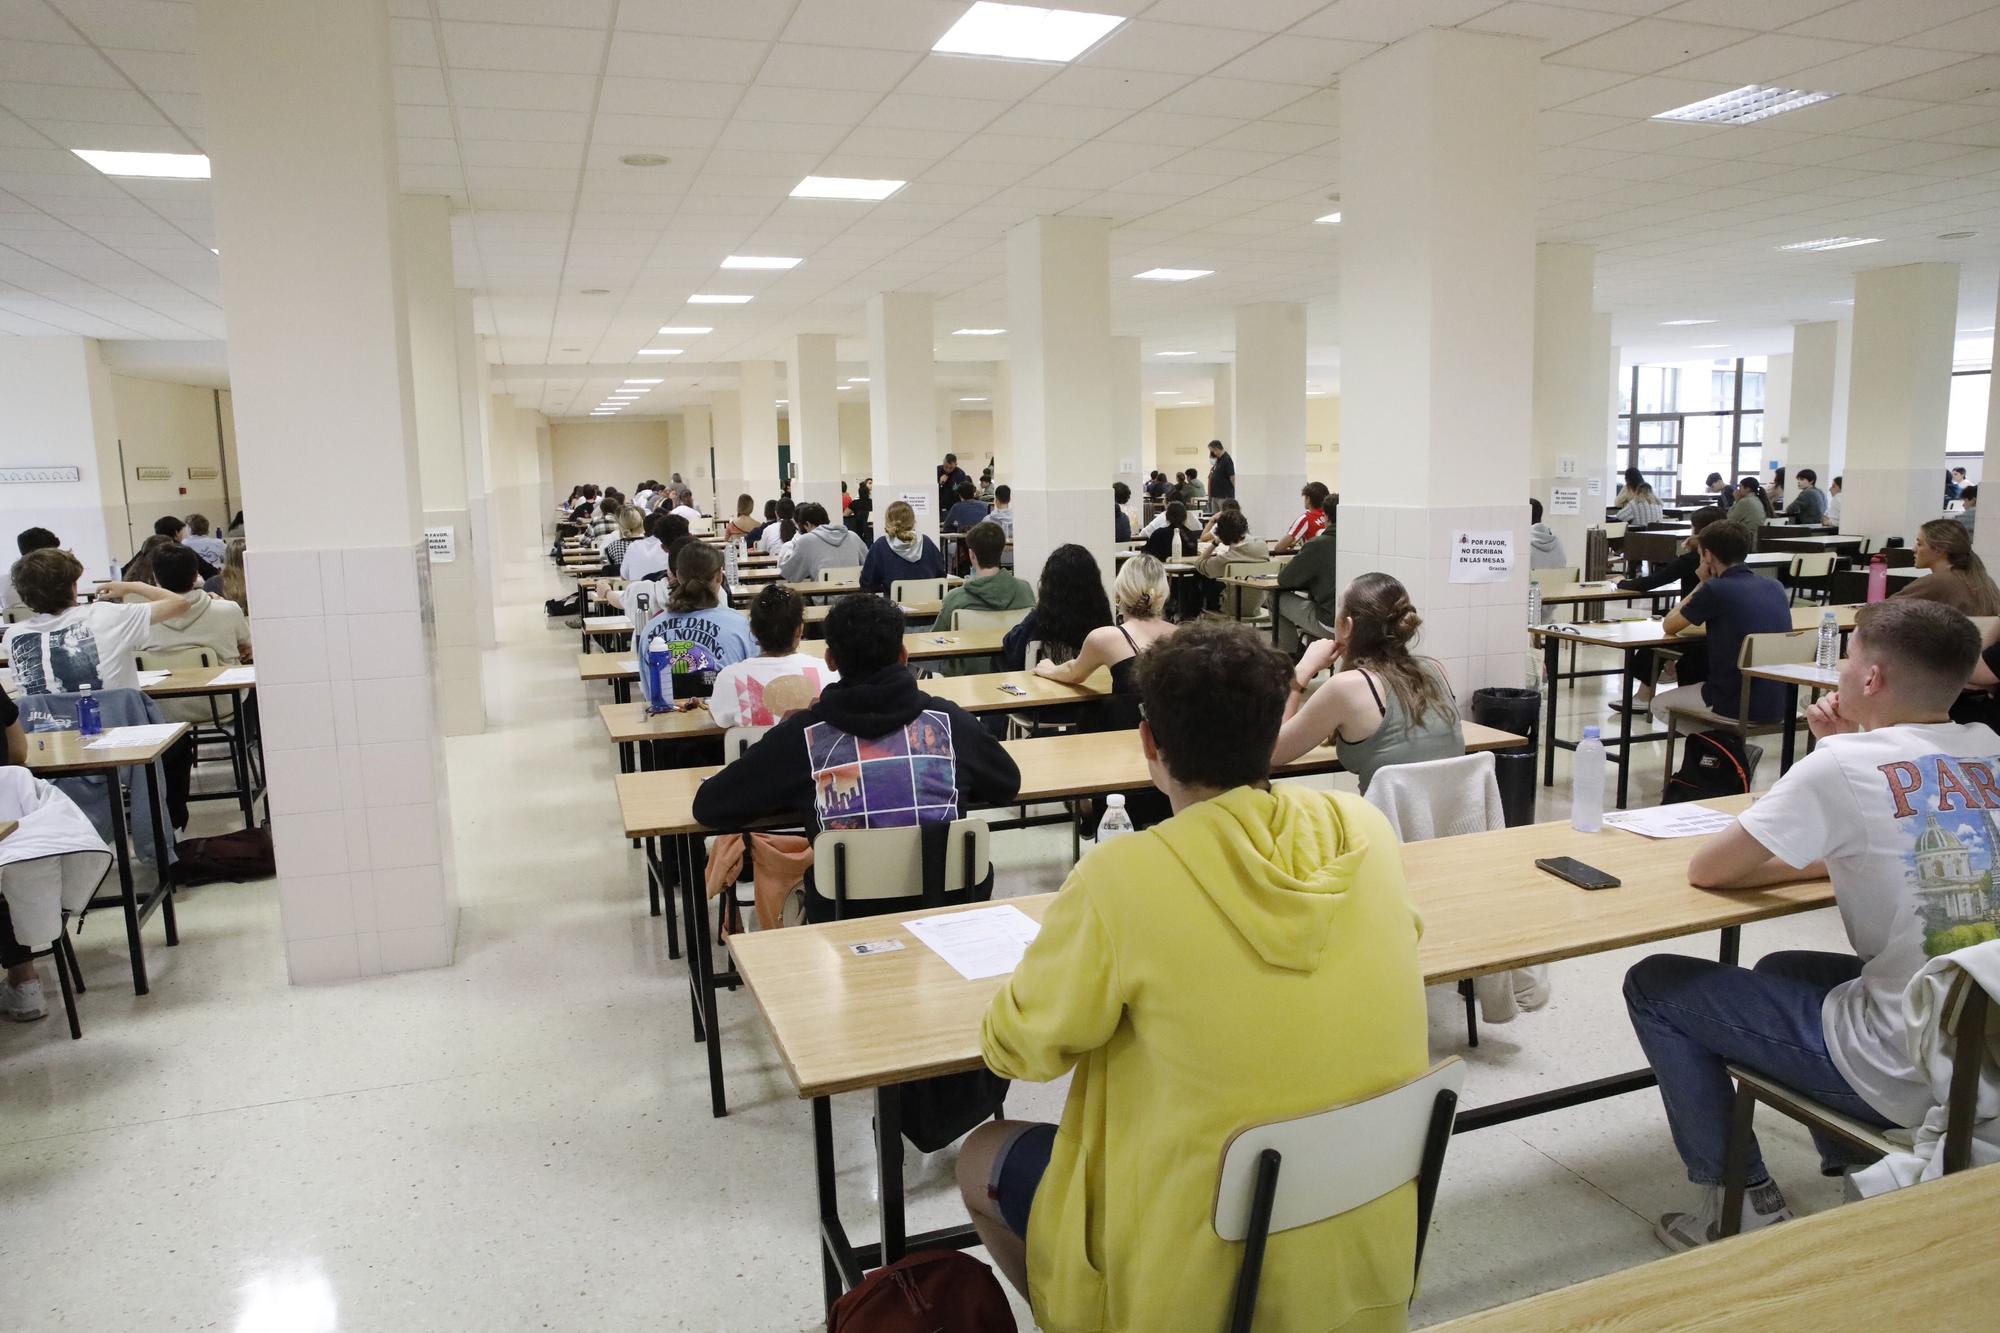 Primera jornada de la EBAU en la Escuela Politécnica de Ingeniería de Gijón